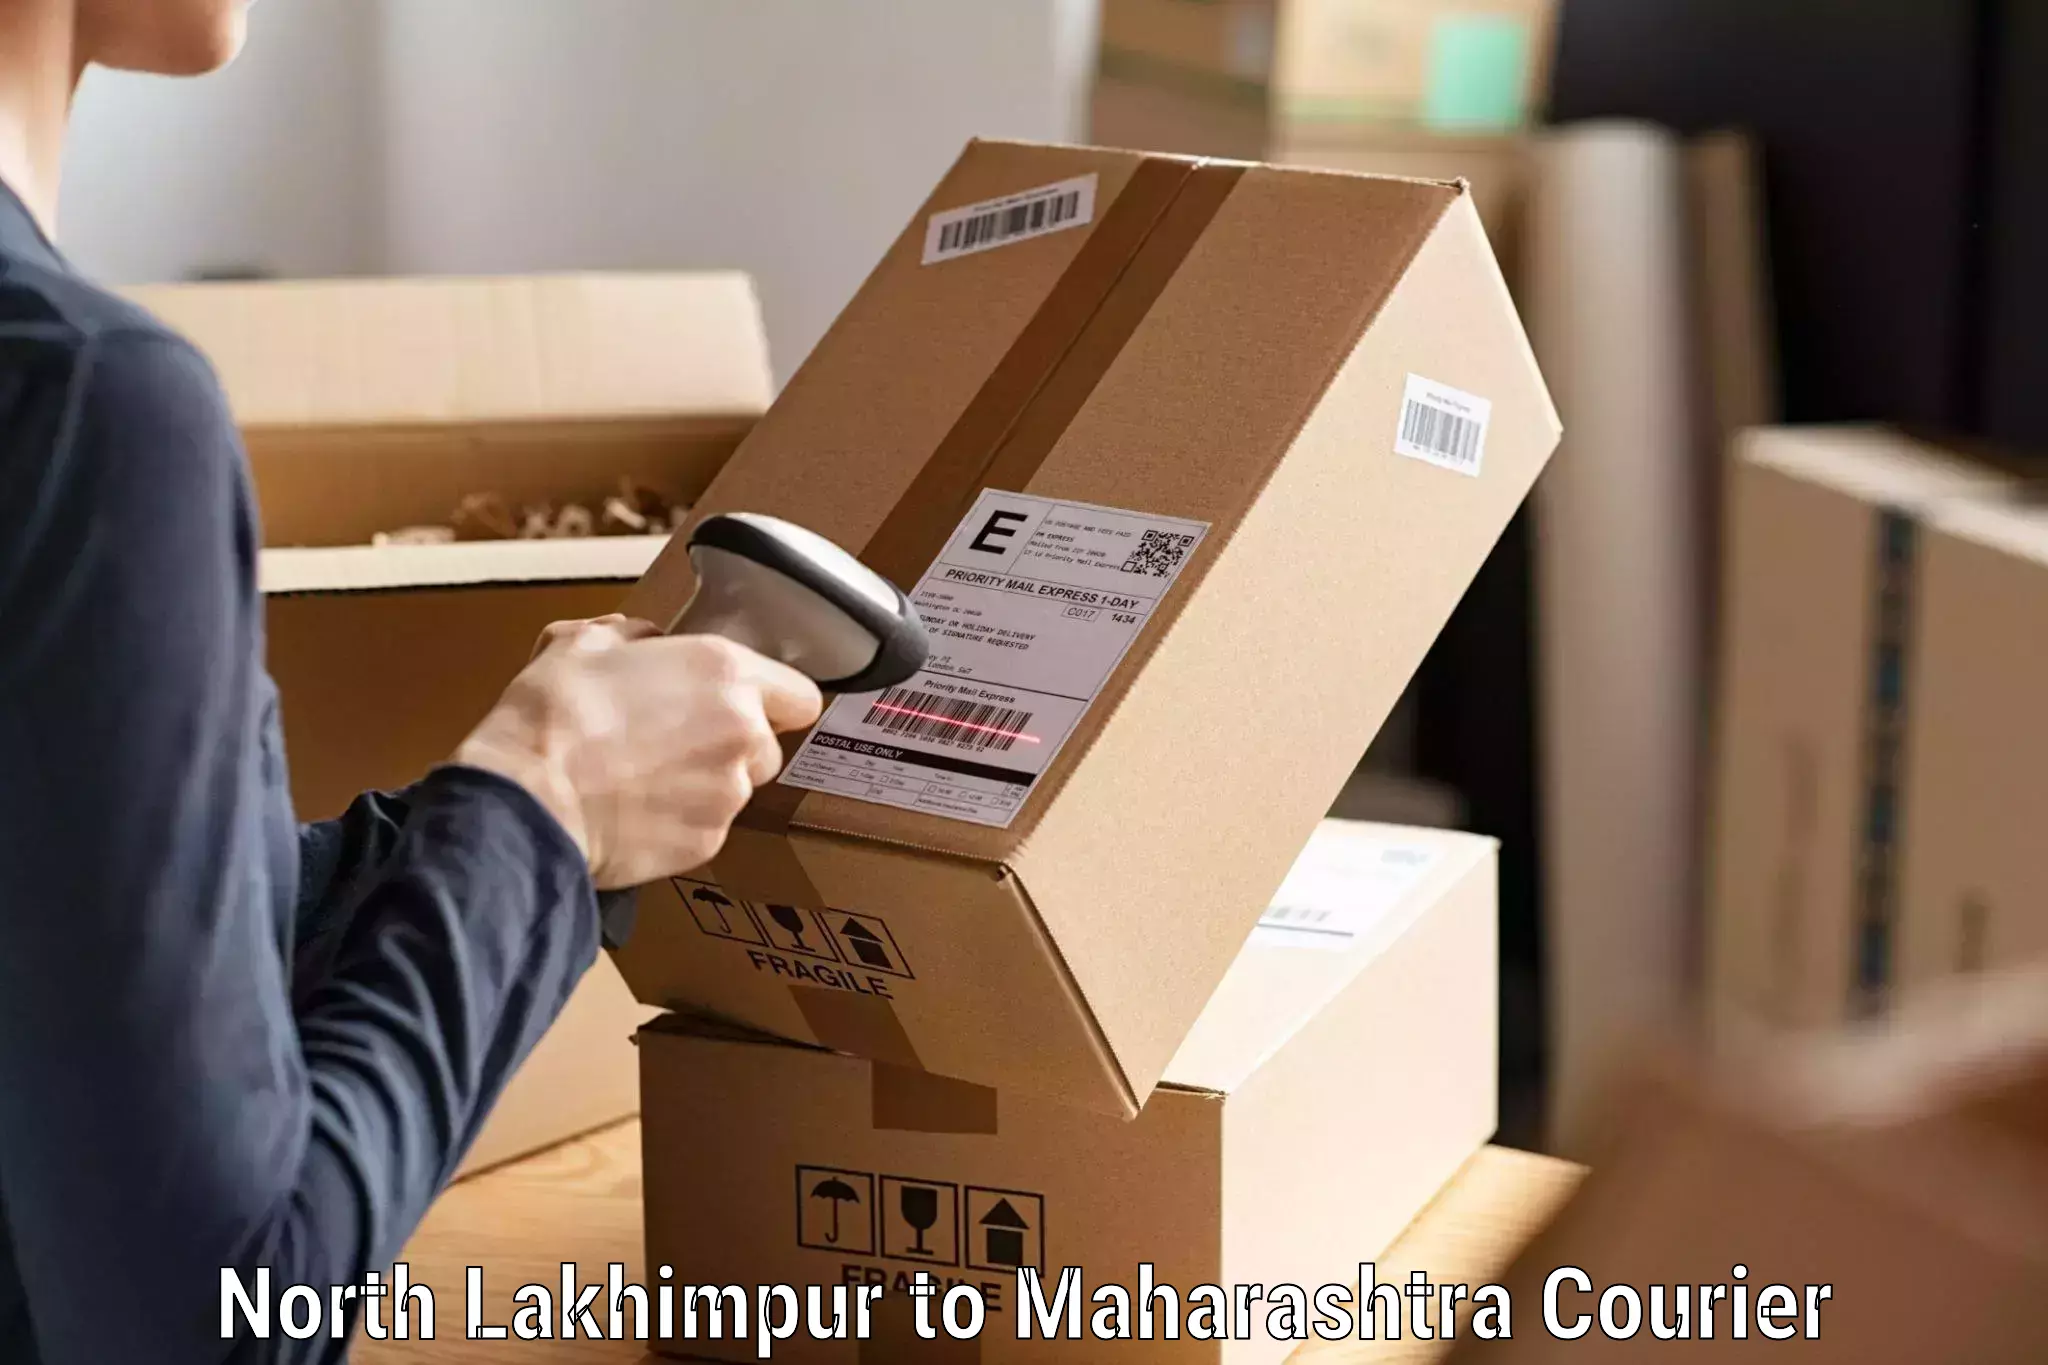 Global shipping solutions North Lakhimpur to Atpadi